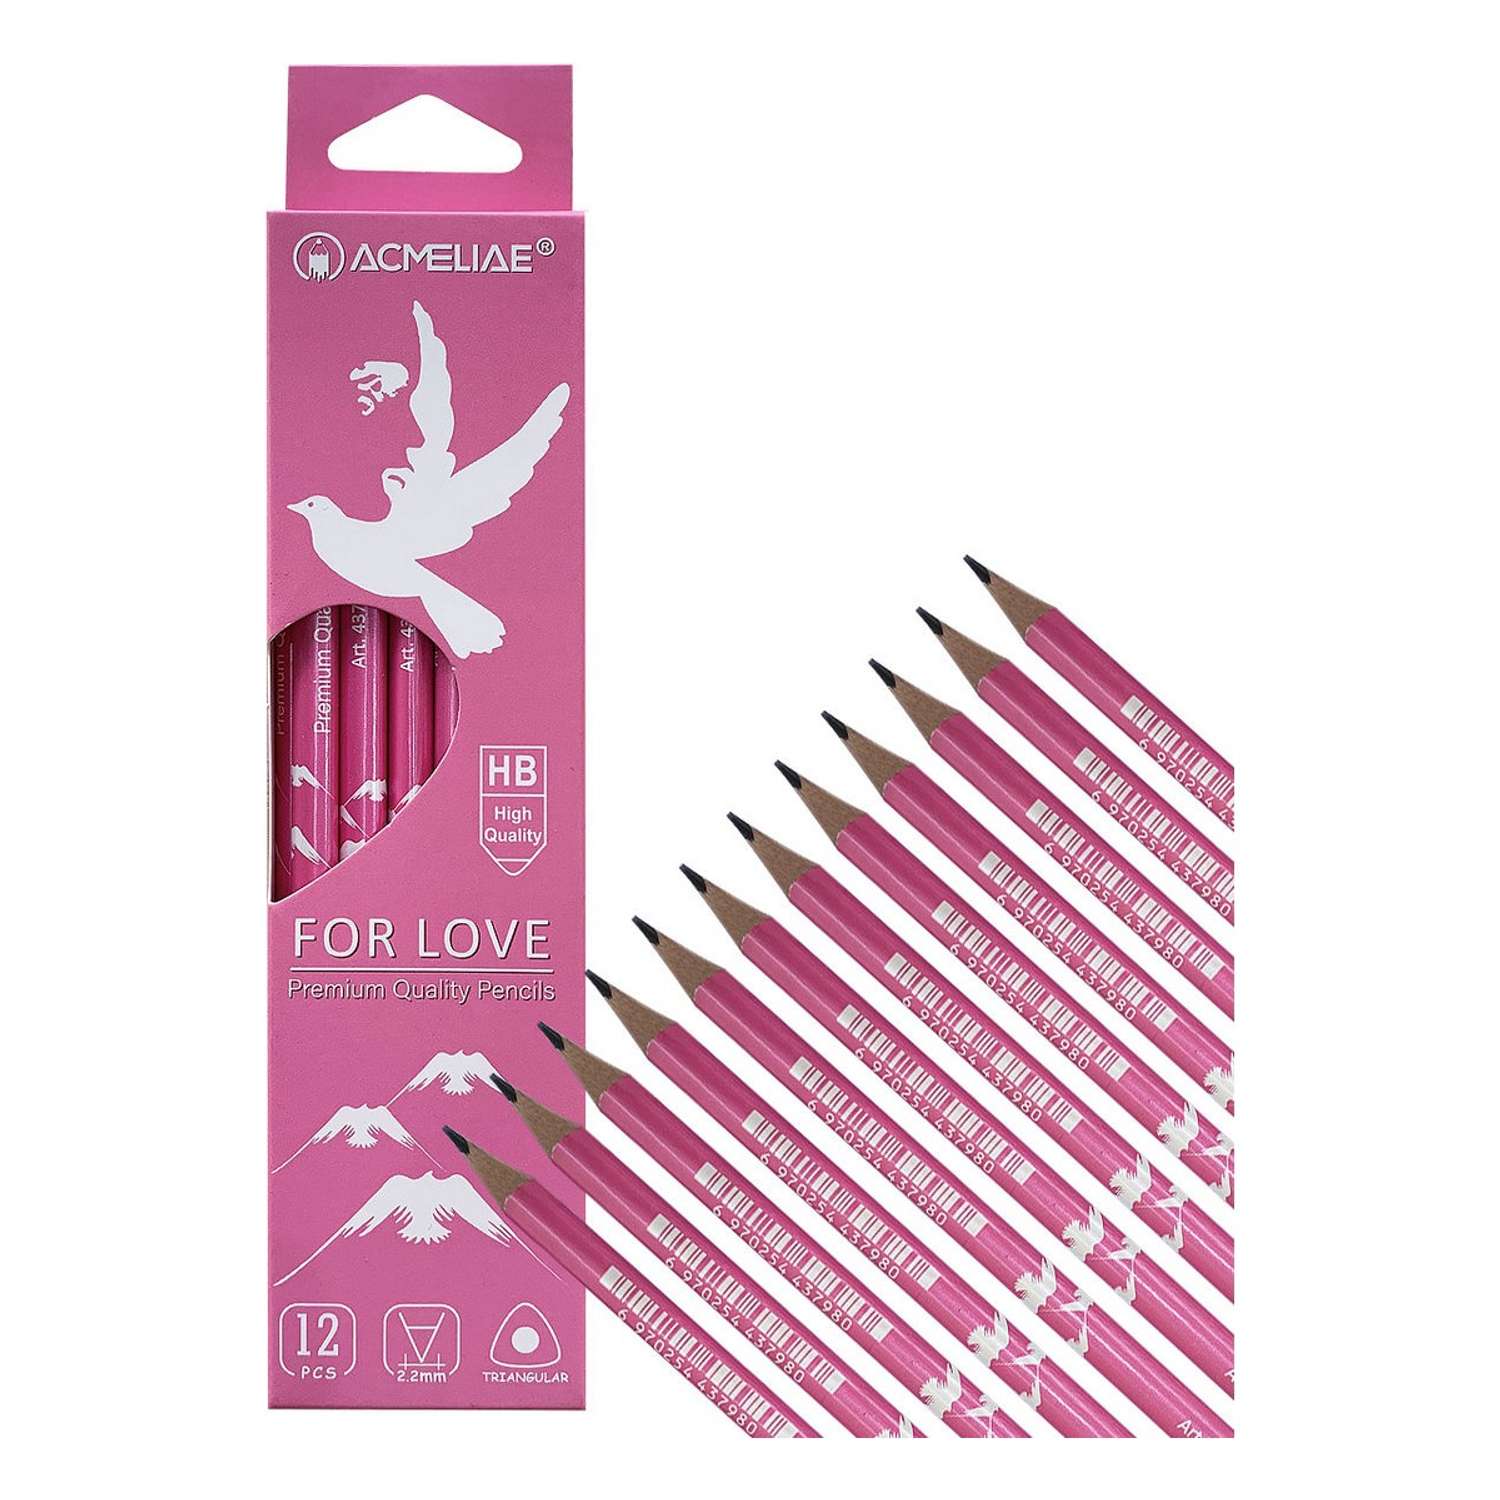 Карандаши чернографитные ACMELIAE HB For Love трехгранный корпус розовый 12шт в упаковке - фото 3